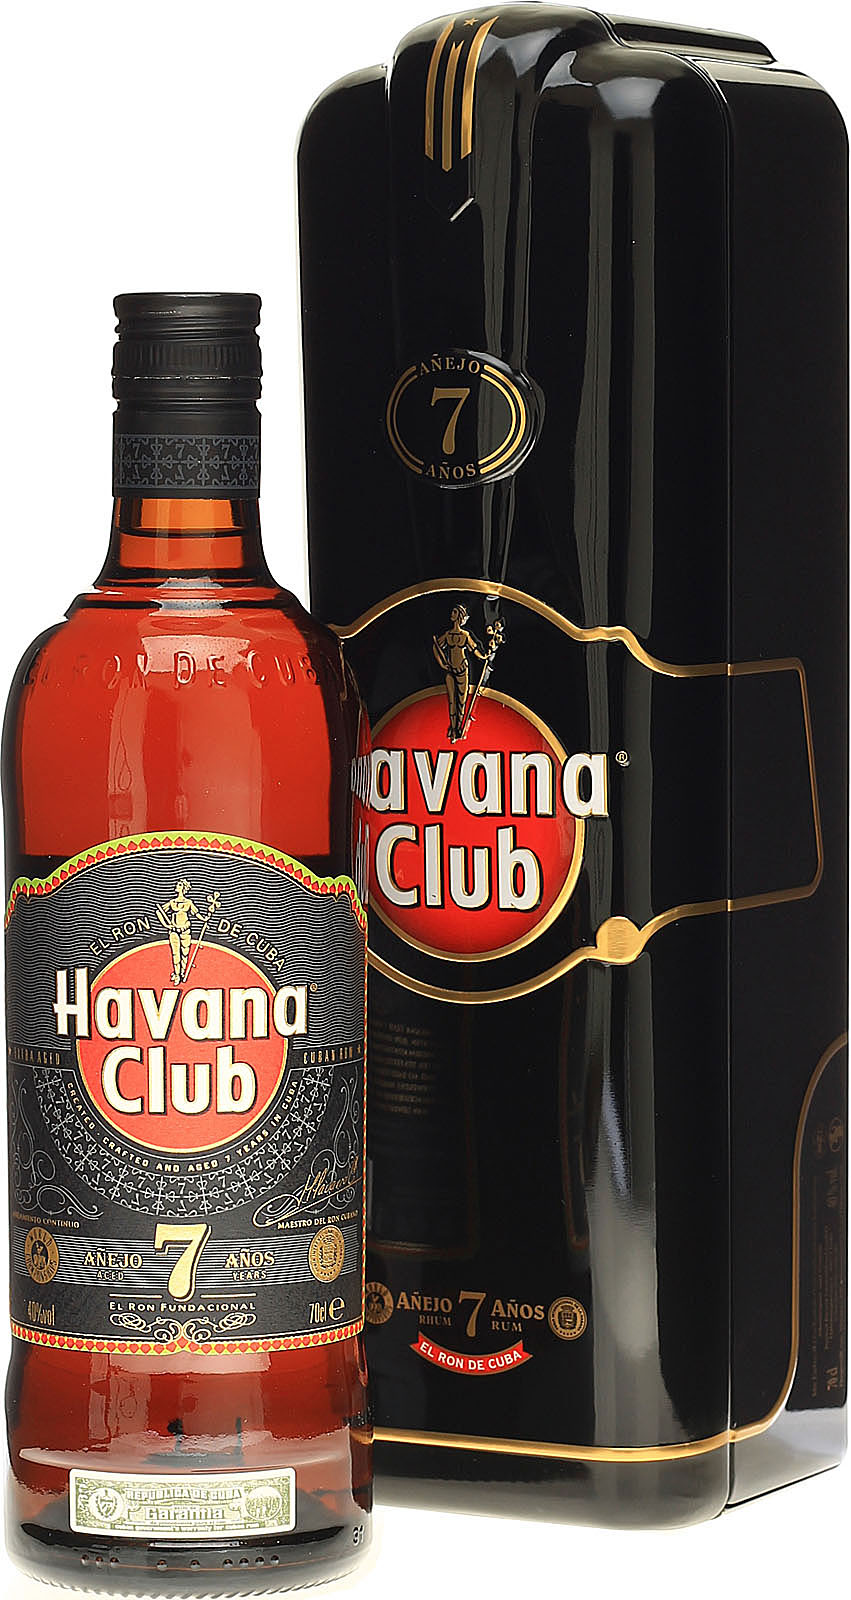 Havana Club 7 Jahre in der Metallbox kommt mit 0 7l und